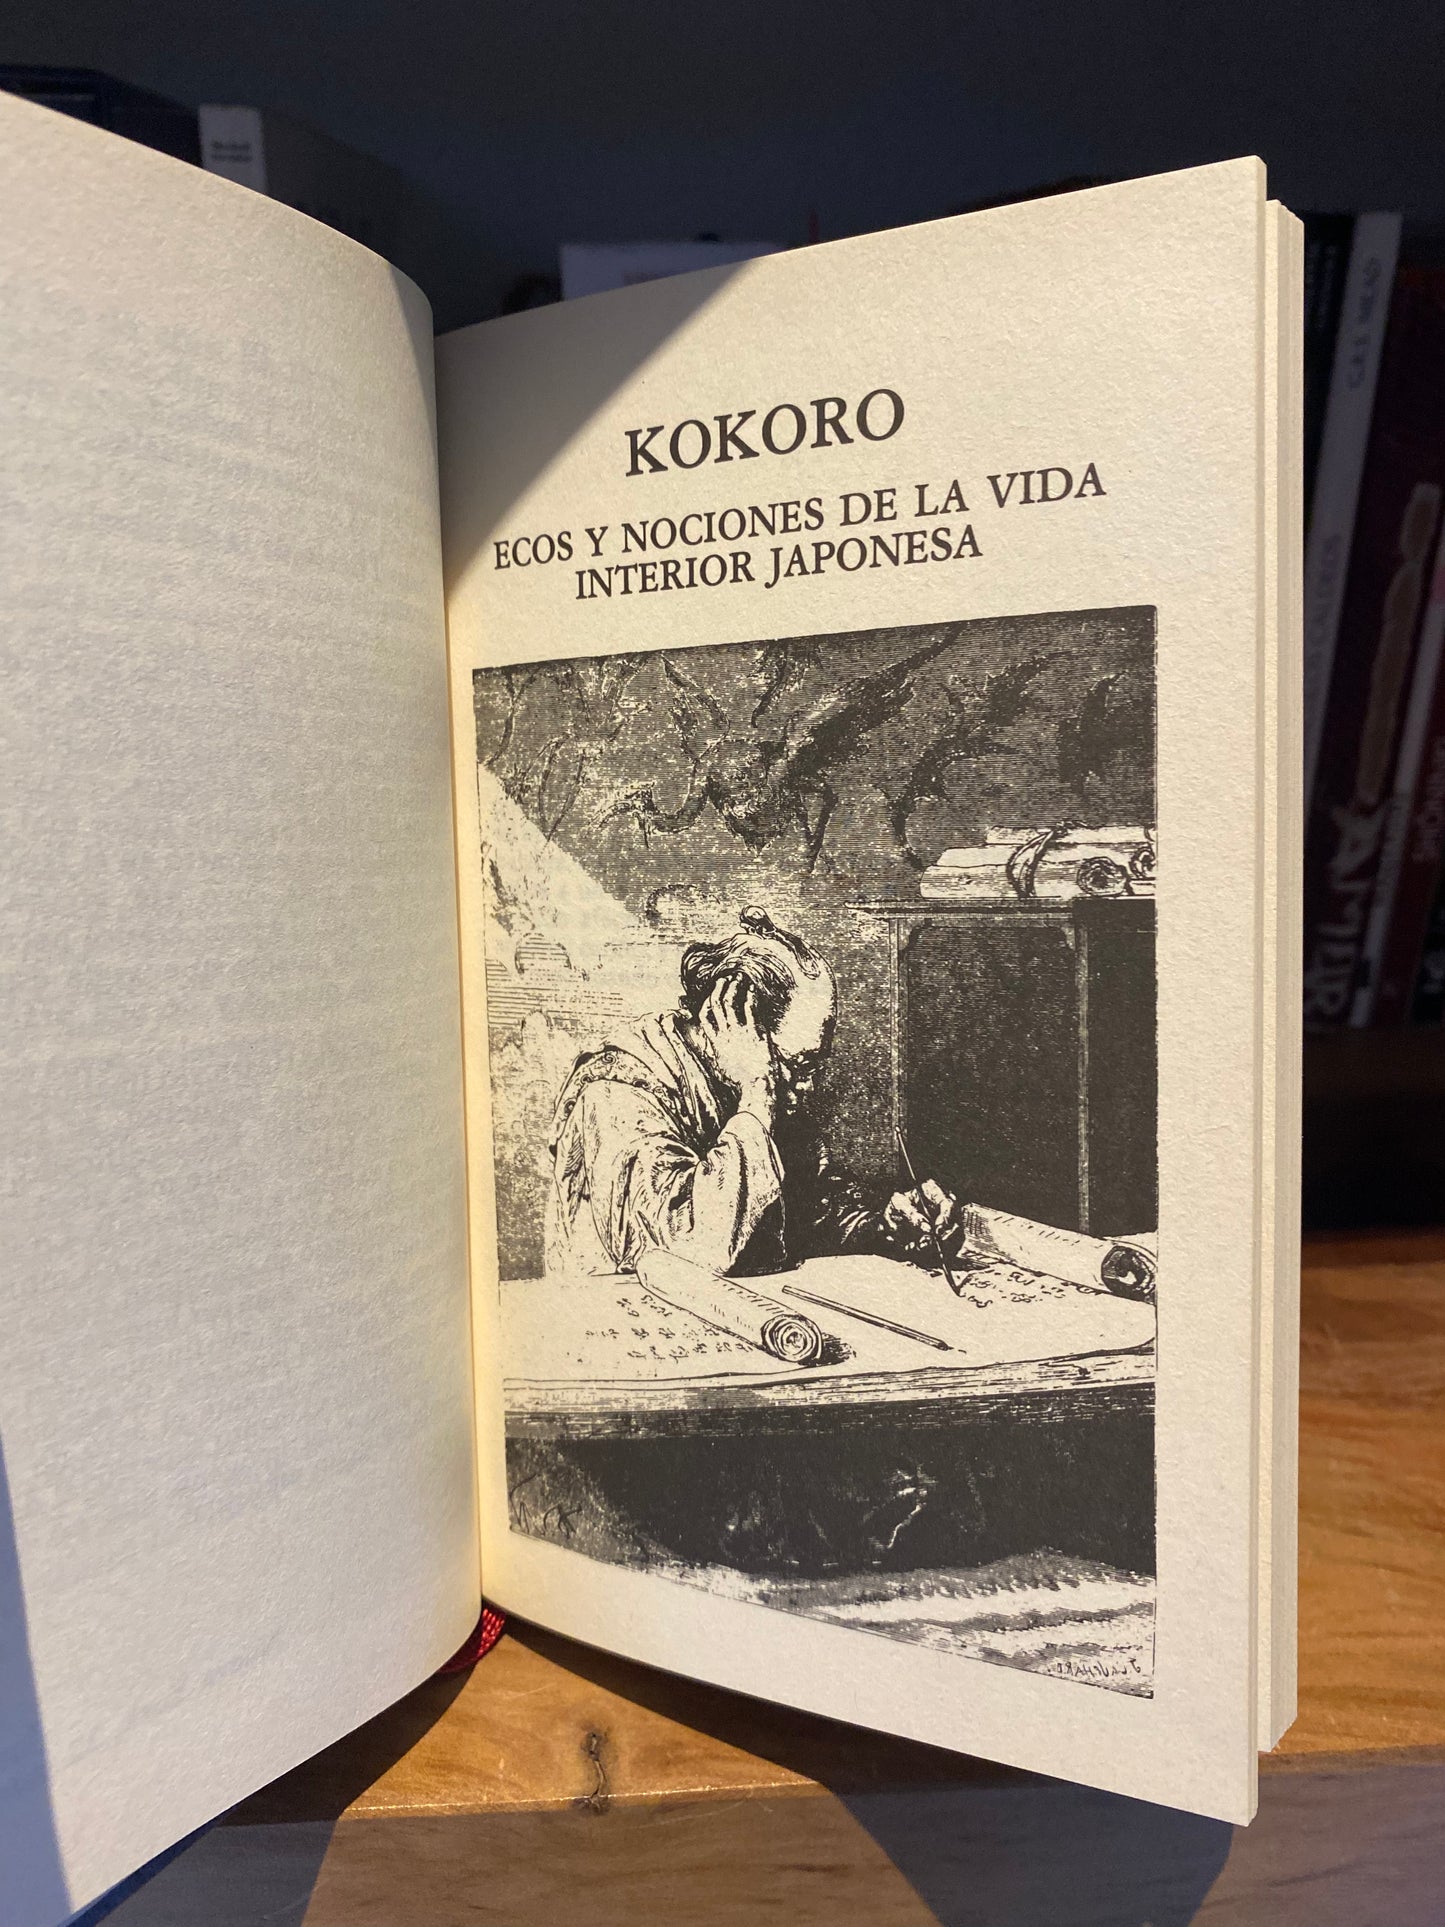 Kokoro, Nociones de la vida interior Japonesa